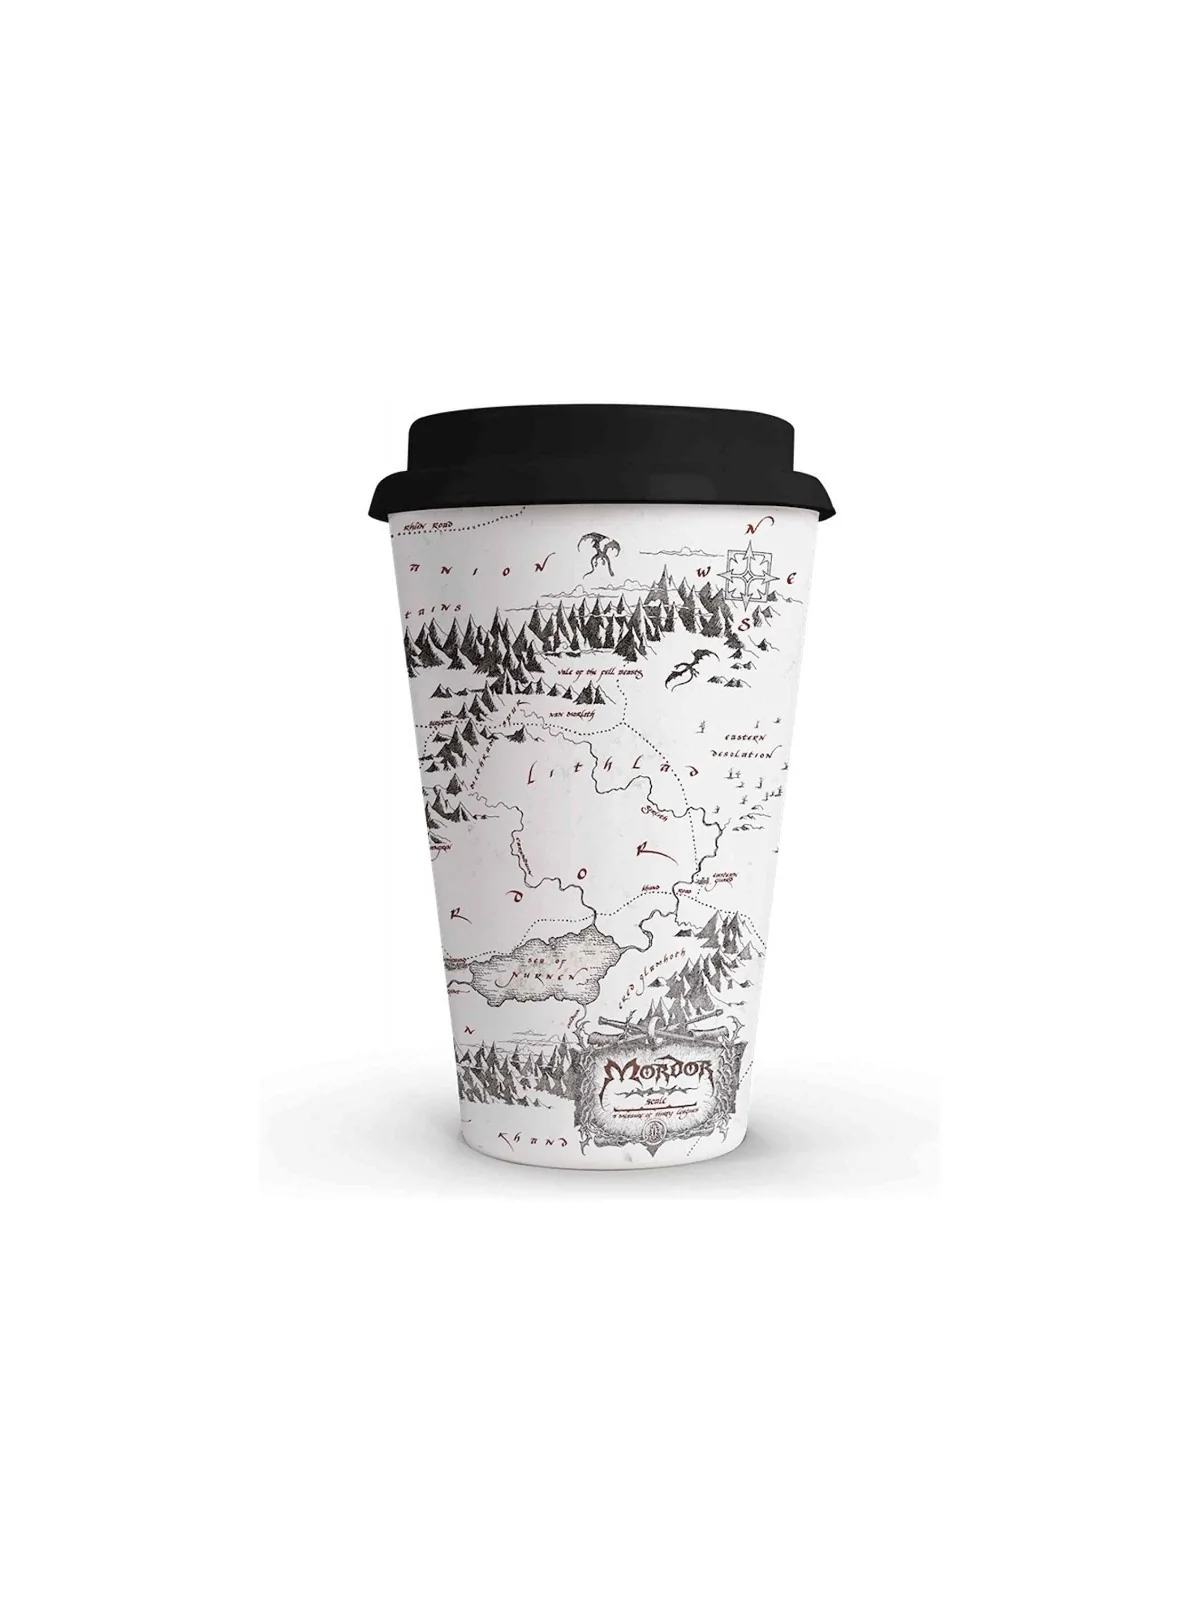 Comprar Vaso de Café Mapa Mordor El Señor de los Anillos barato al mej